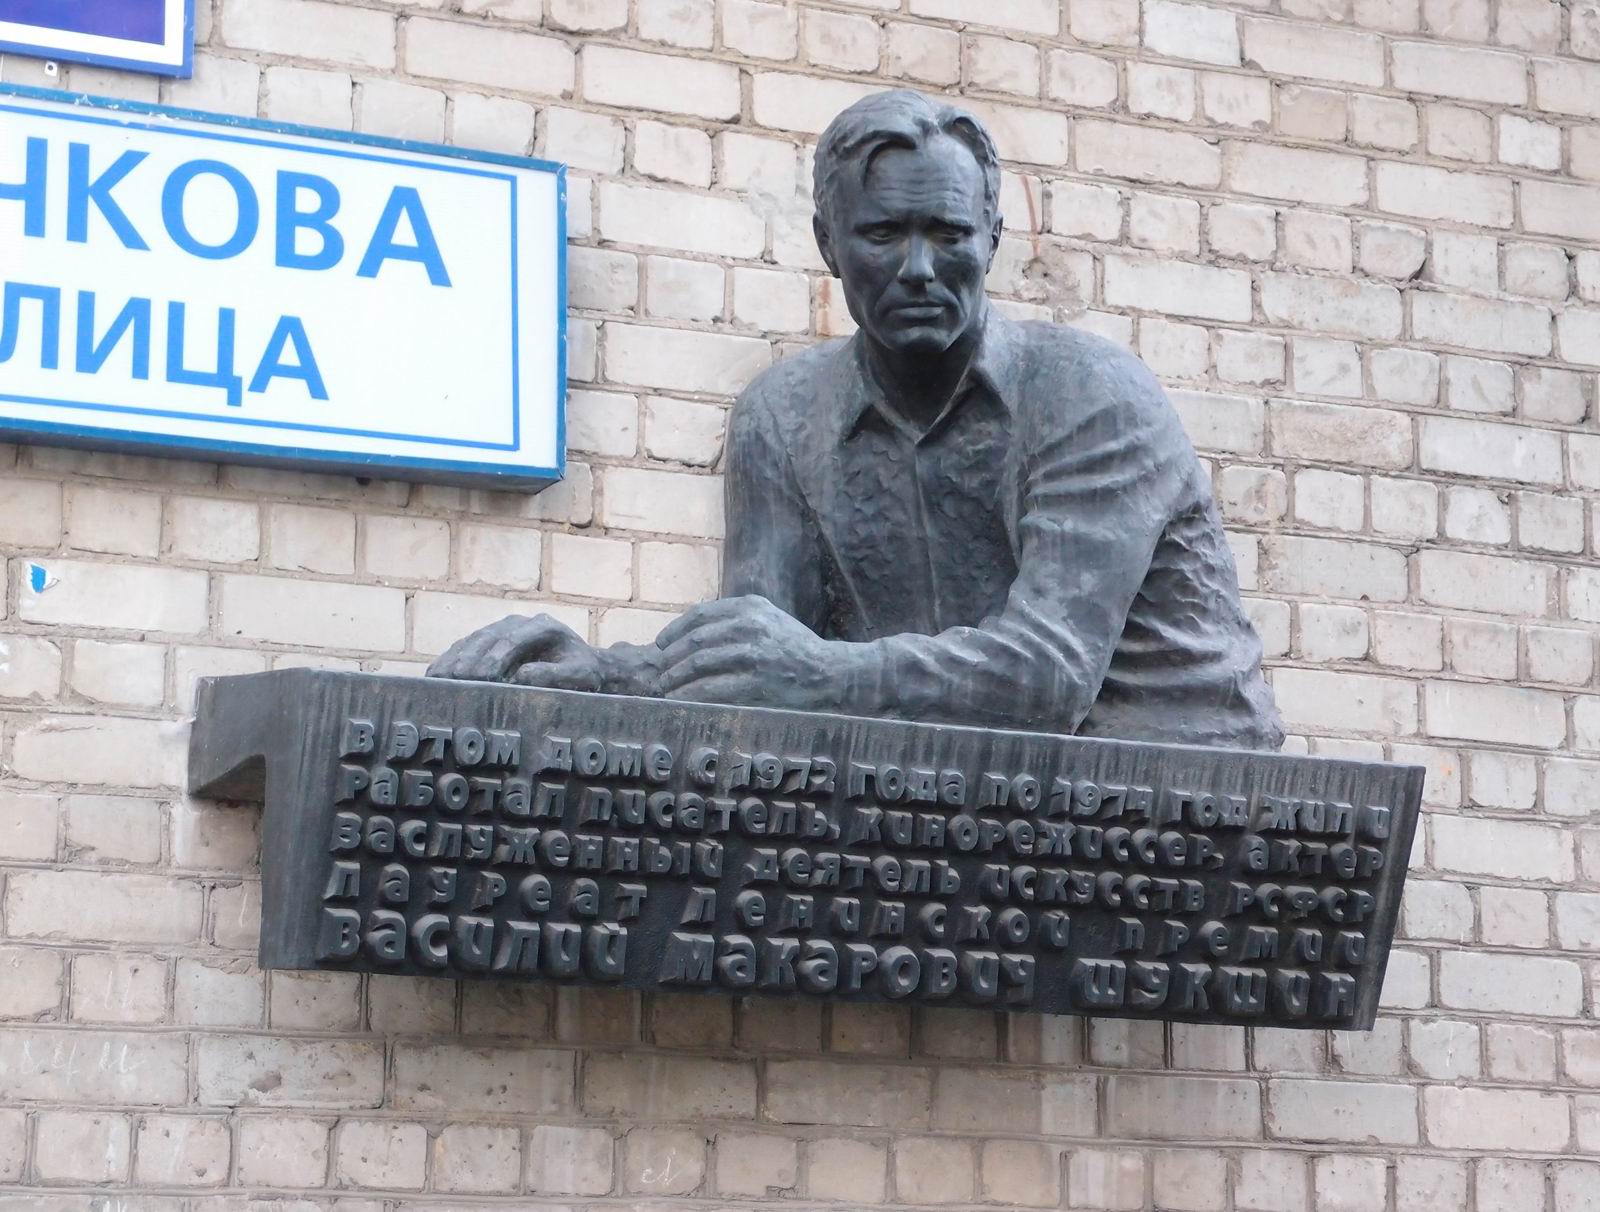 Мемориальная доска Шукшину В.М. (1929-1974), ск. В.М.Клыков, арх. С.И.Смирнов, на улице Бочкова, дом 5, открыта 25.7.1977.